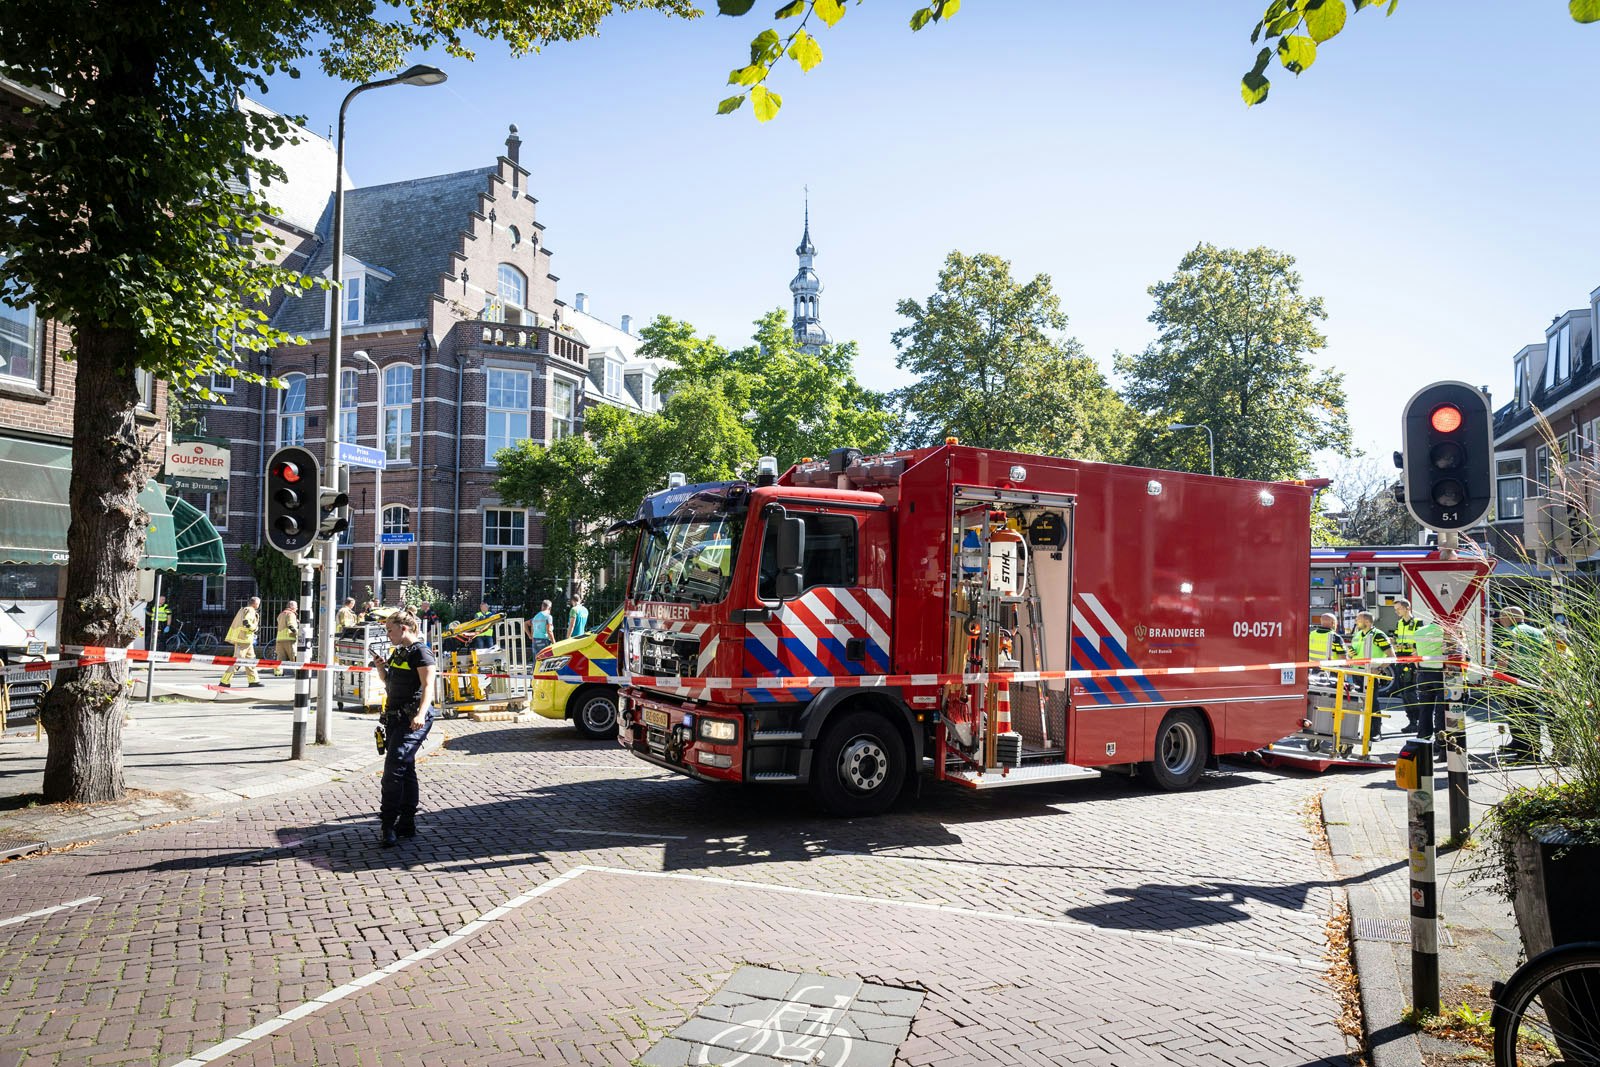 Ernstig ongeluk op de Jan van Scorelstraat in Utrecht: twee personen bekneld onder vrachtwagenwiel.